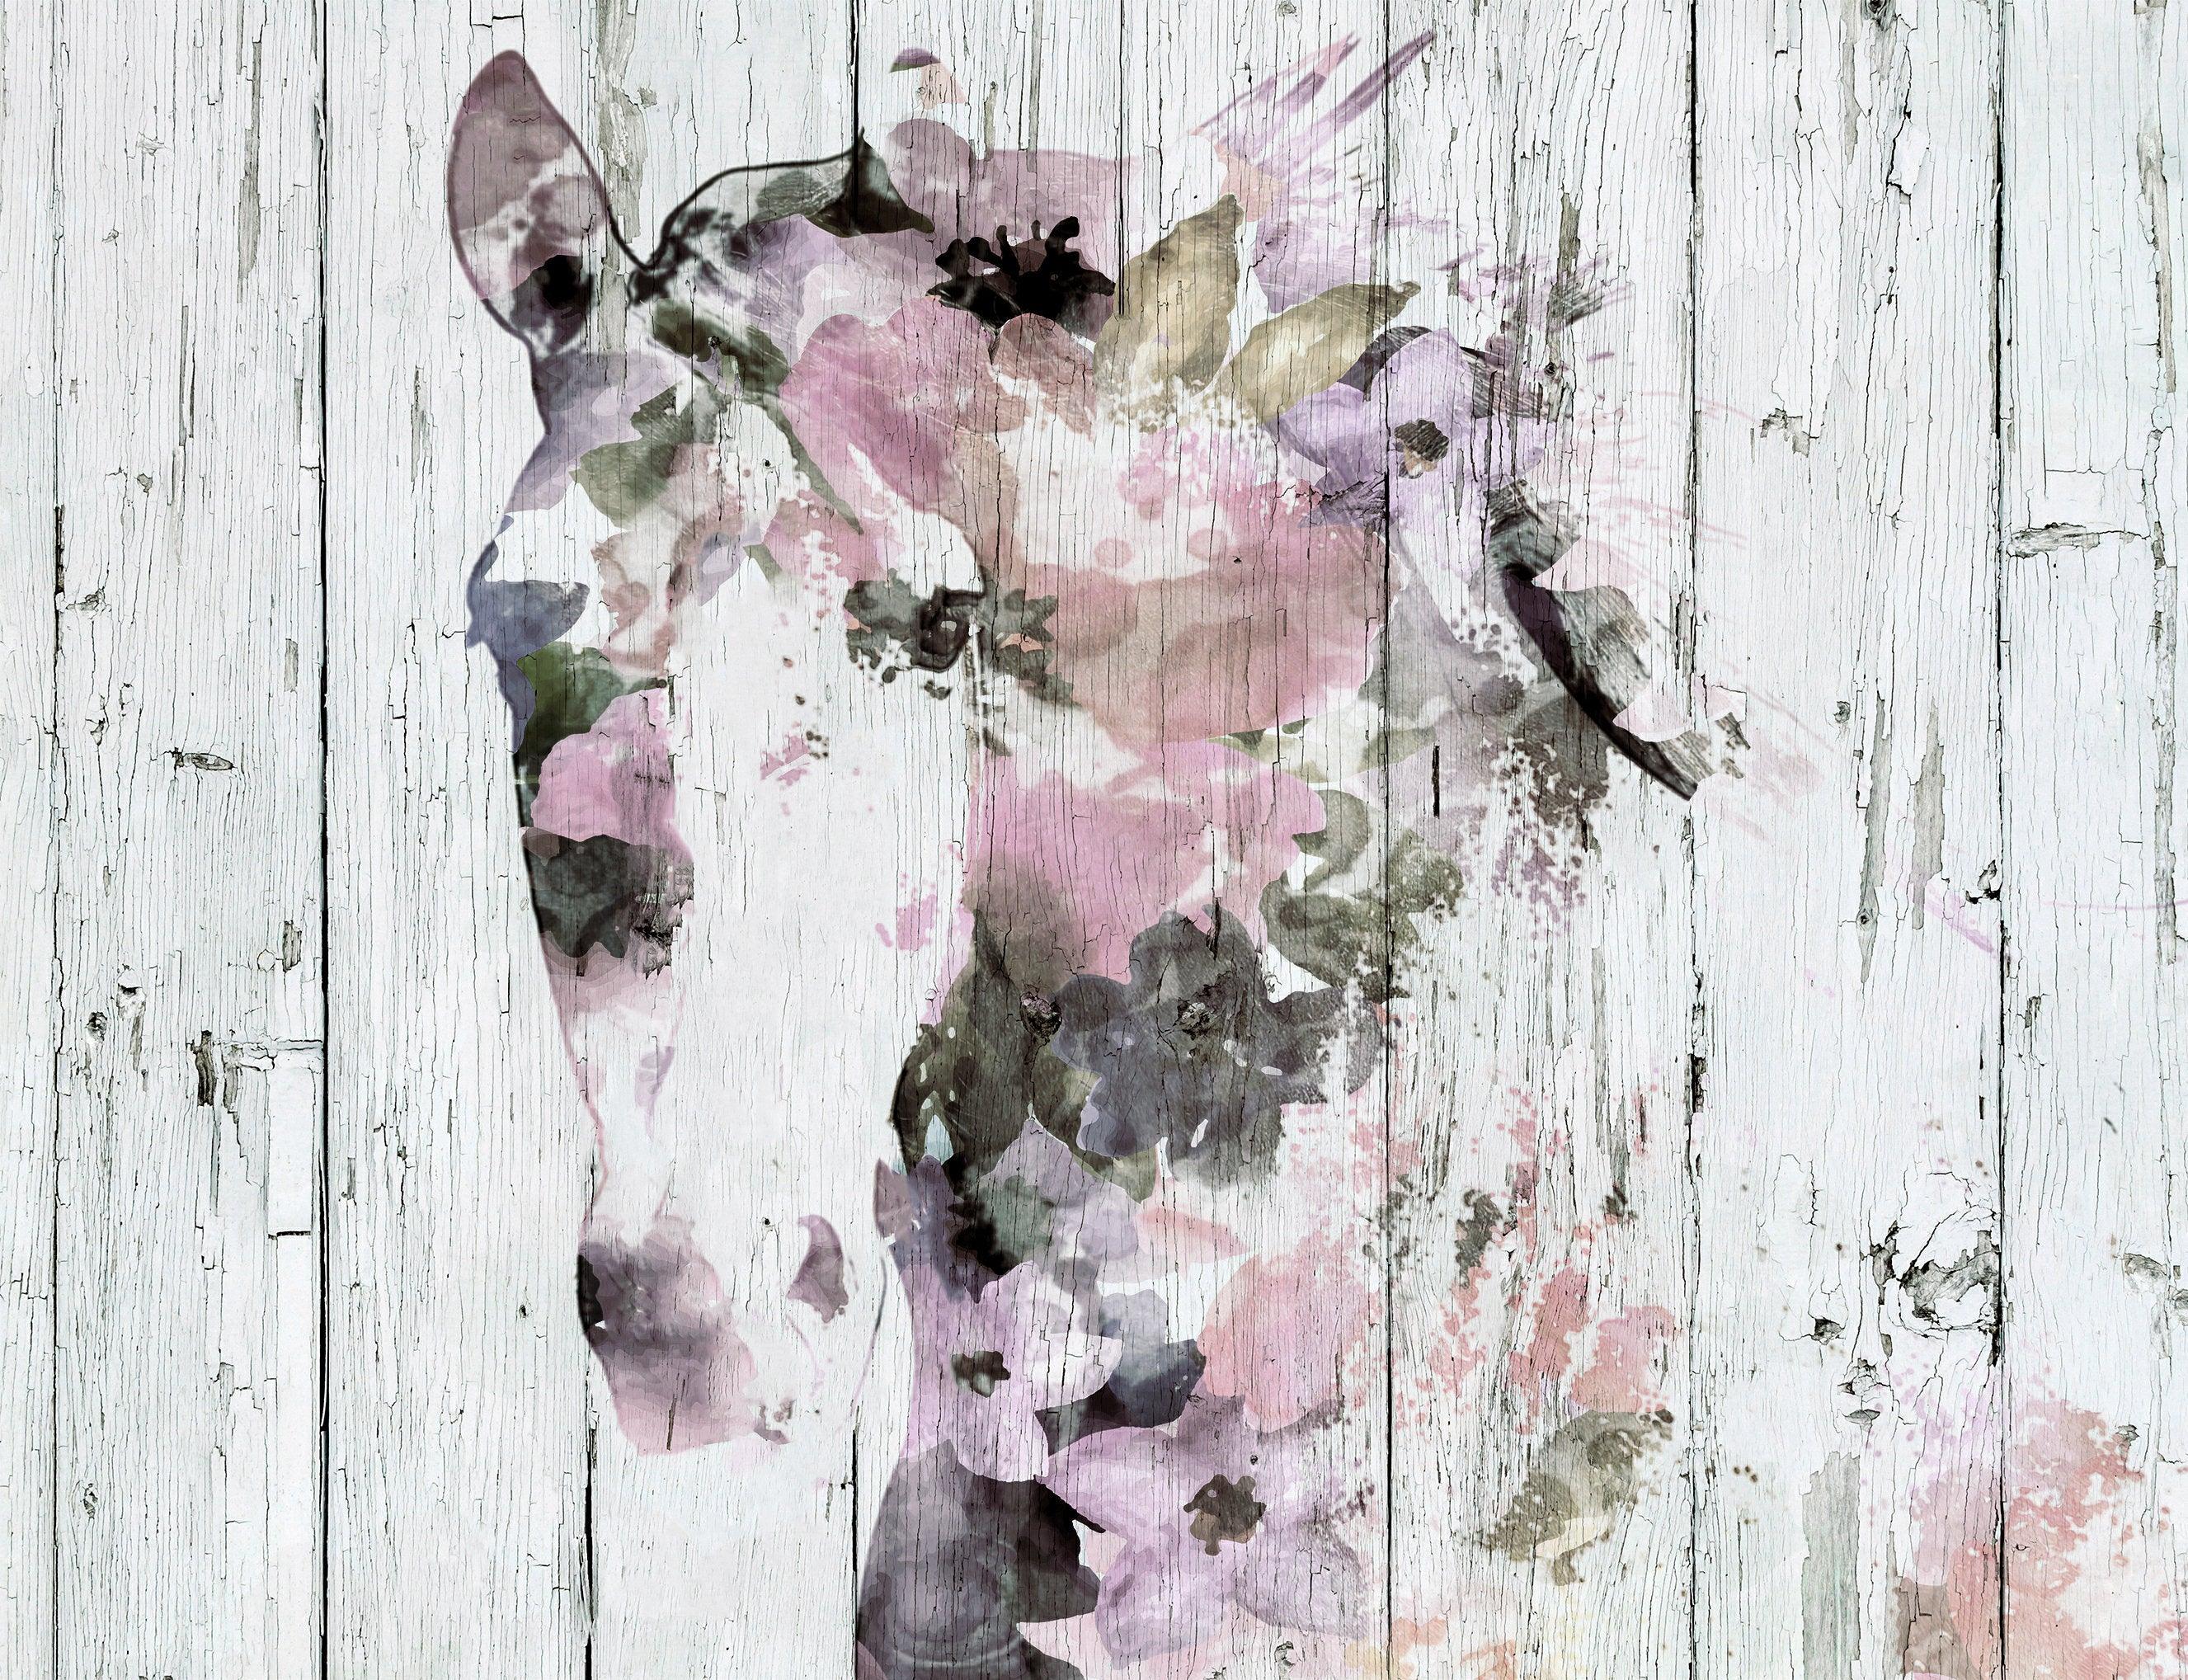 Horse Farmhouse Rosa Lila Weiß Mixed Media Gemälde auf Leinwand 48 x 36 Zoll"